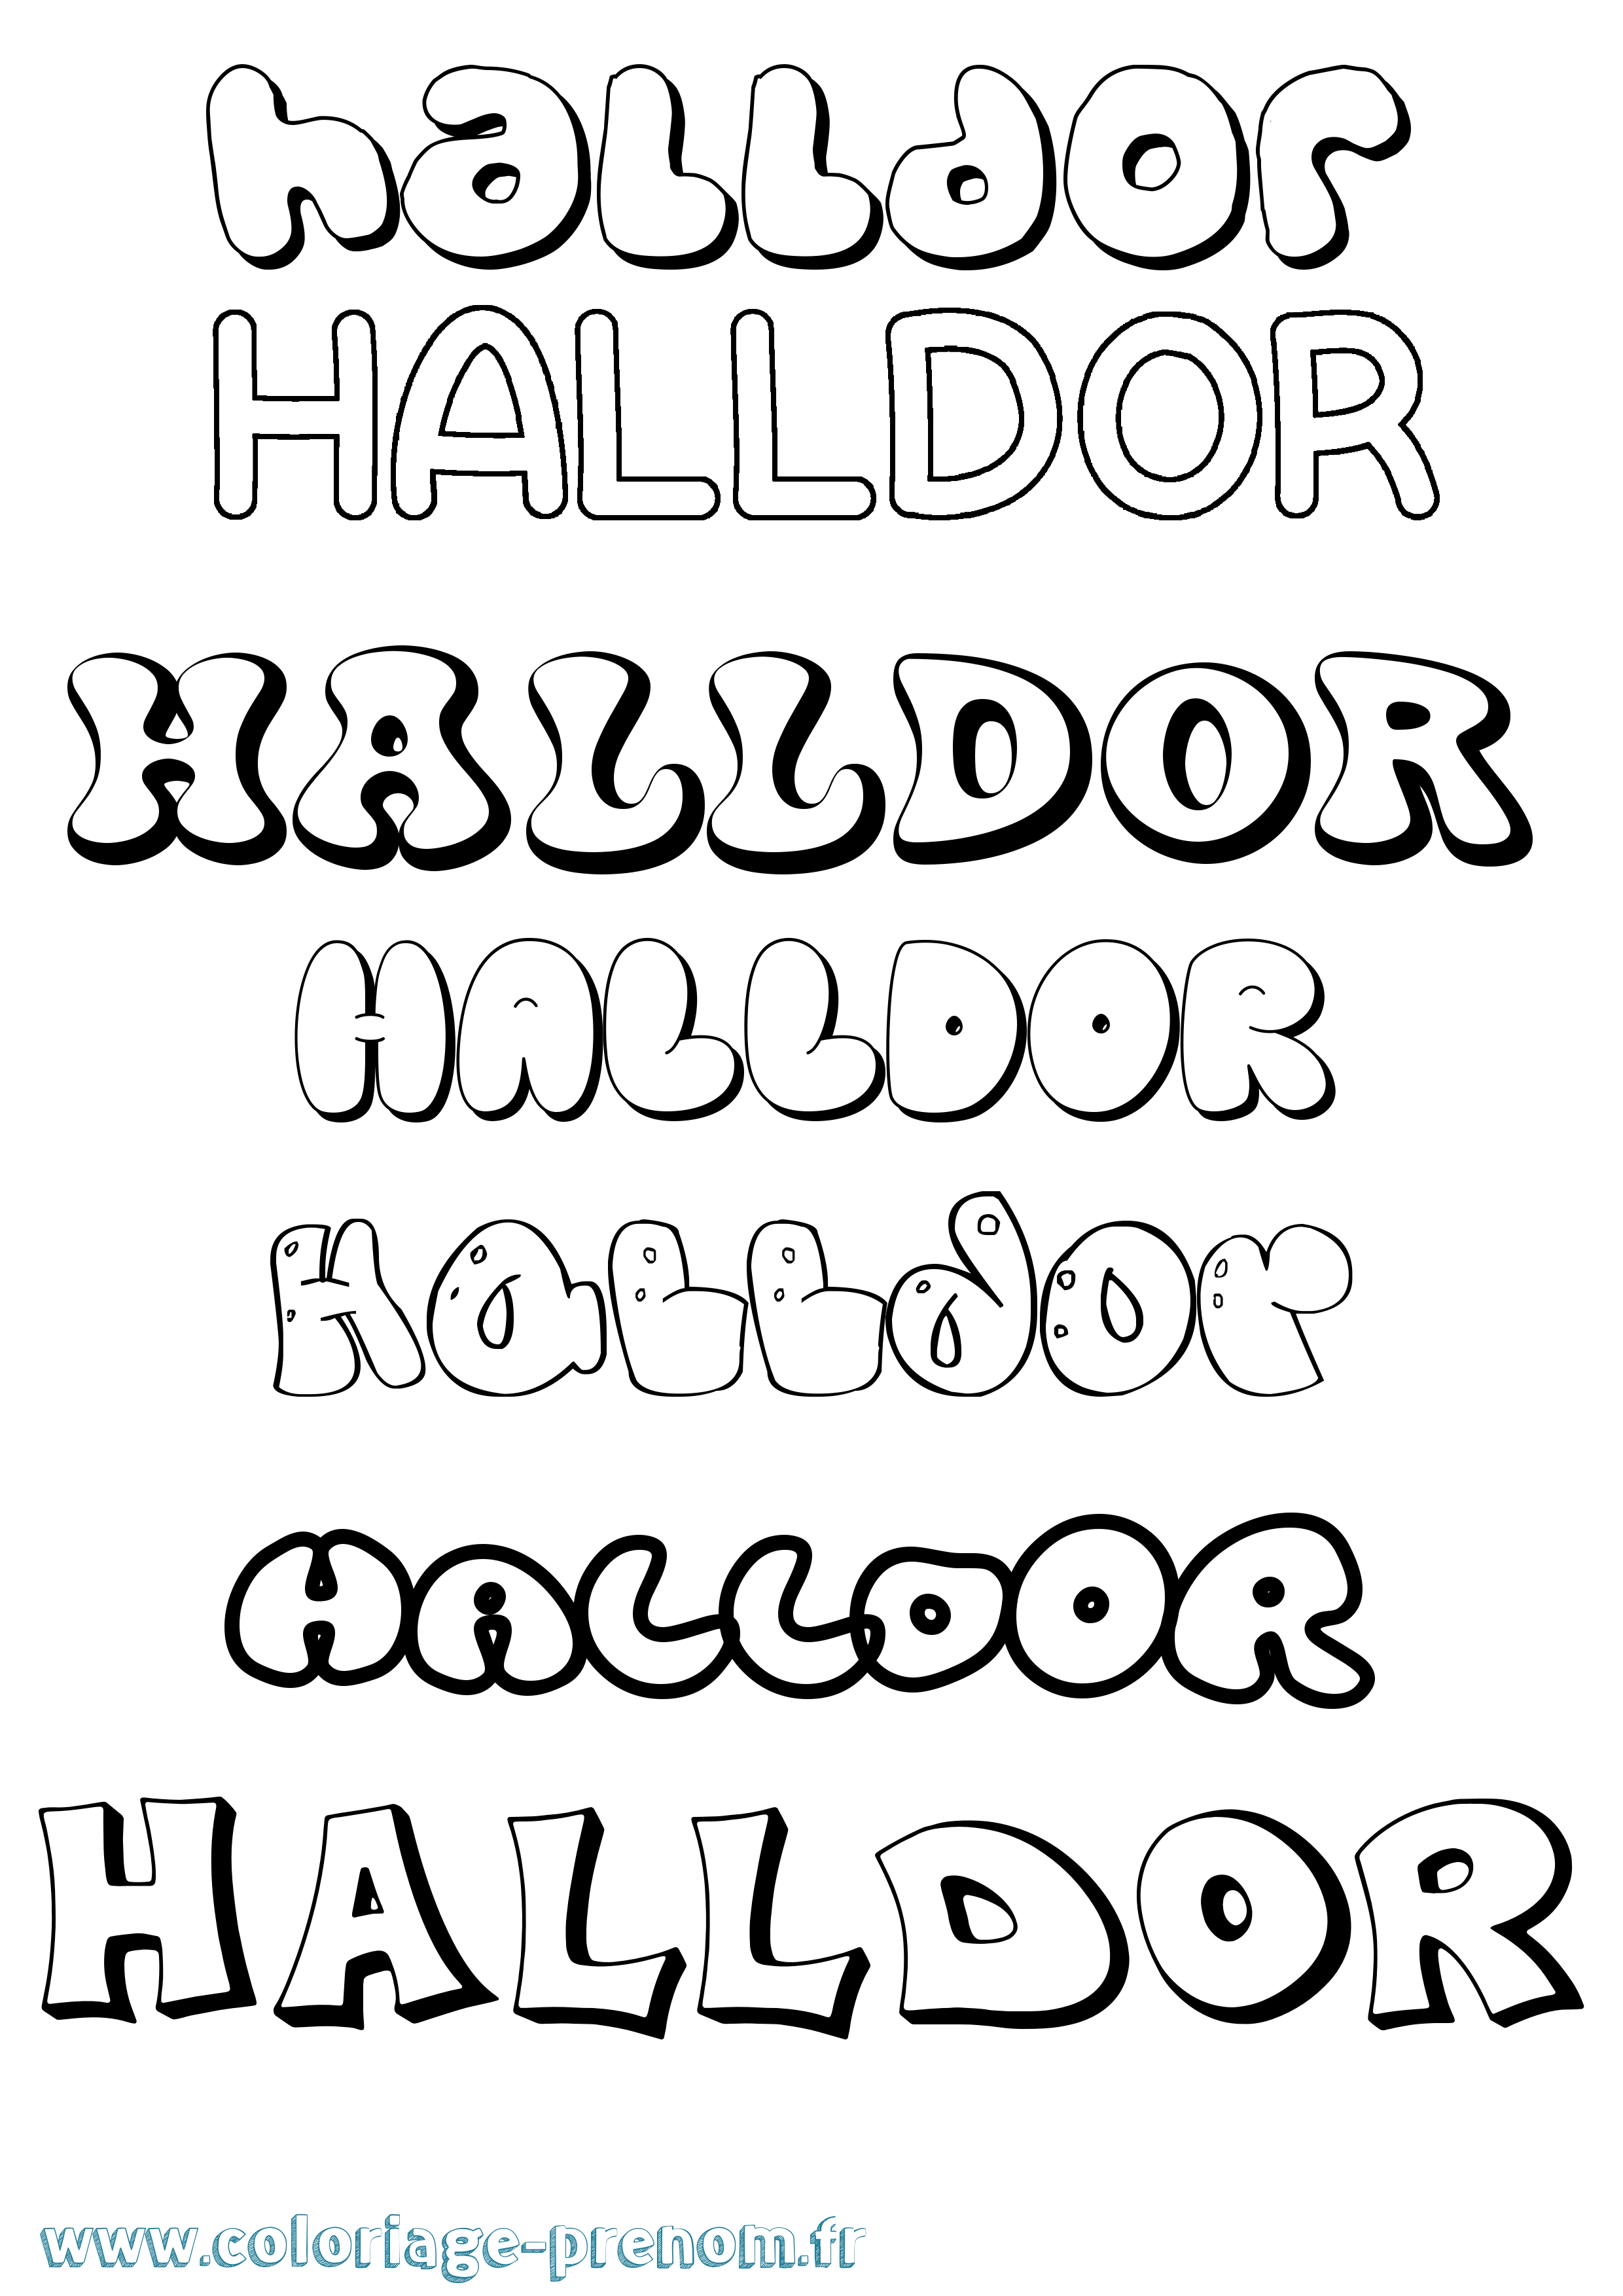 Coloriage prénom Halldor Bubble